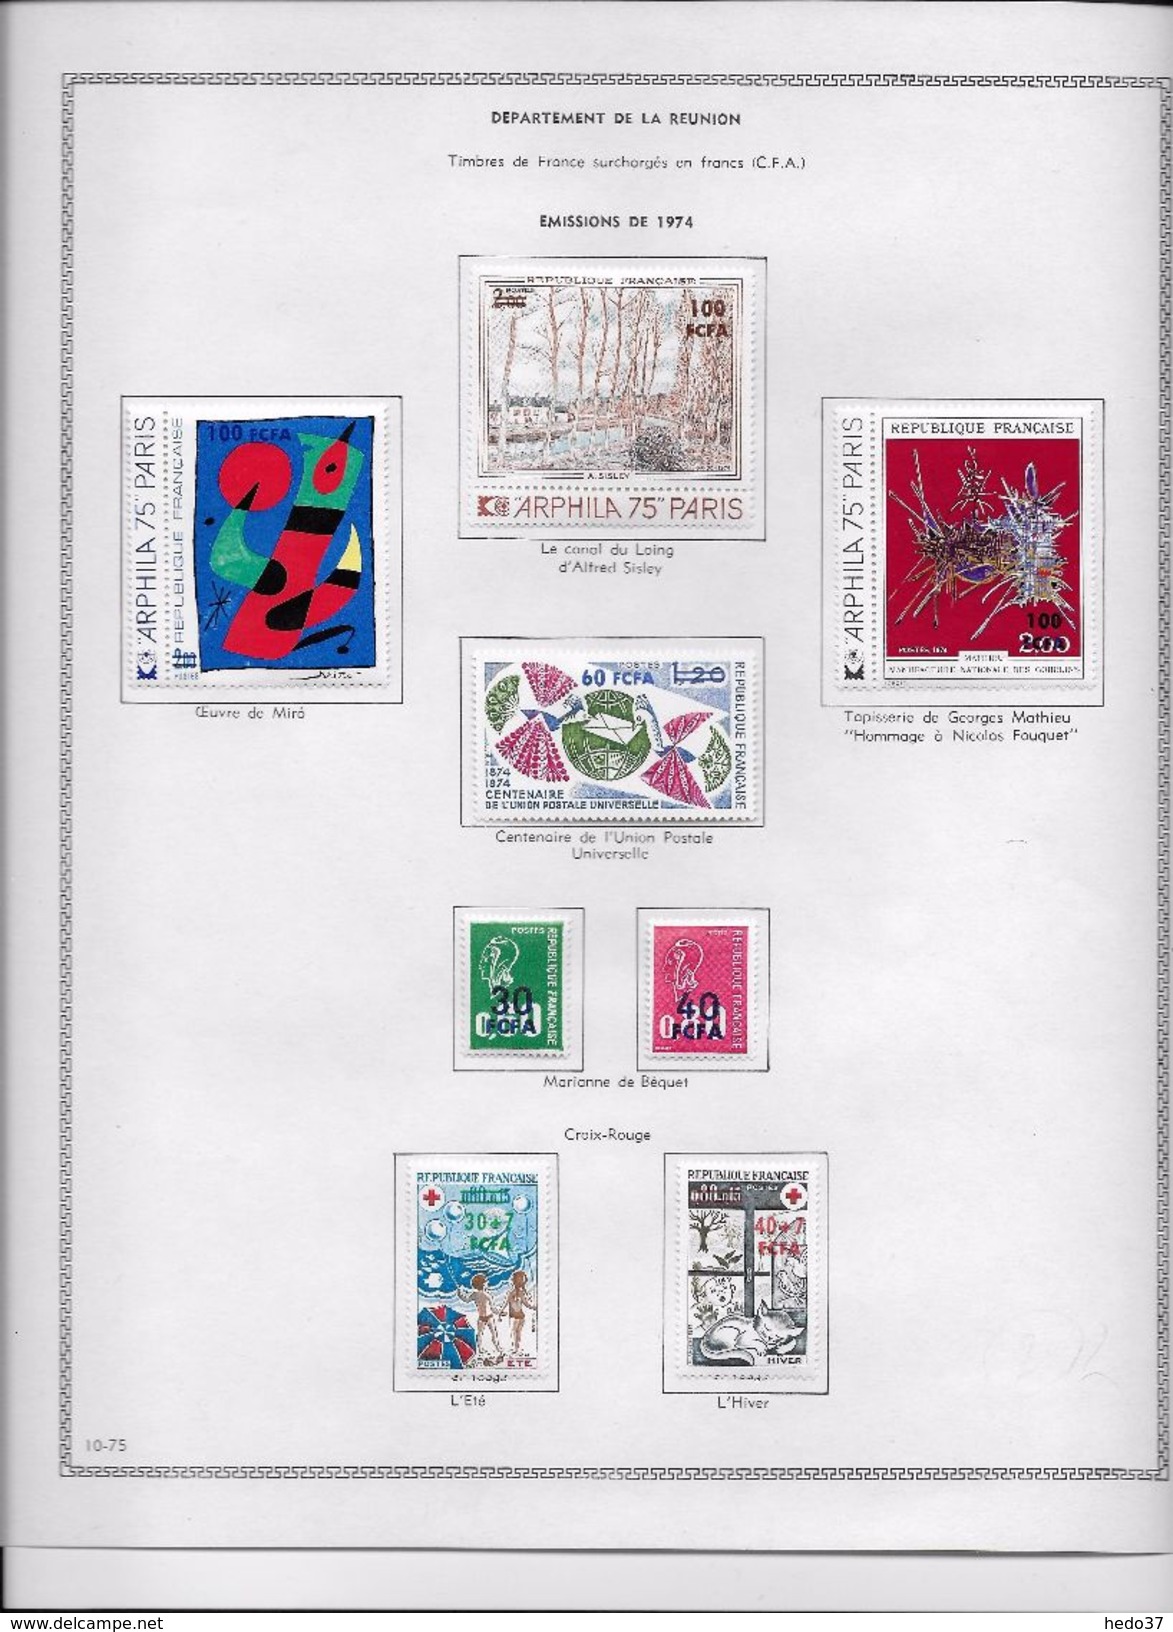 Réunion - Collection Vendue Page Par Page - Neufs * Avec Charnière - TB - Unused Stamps